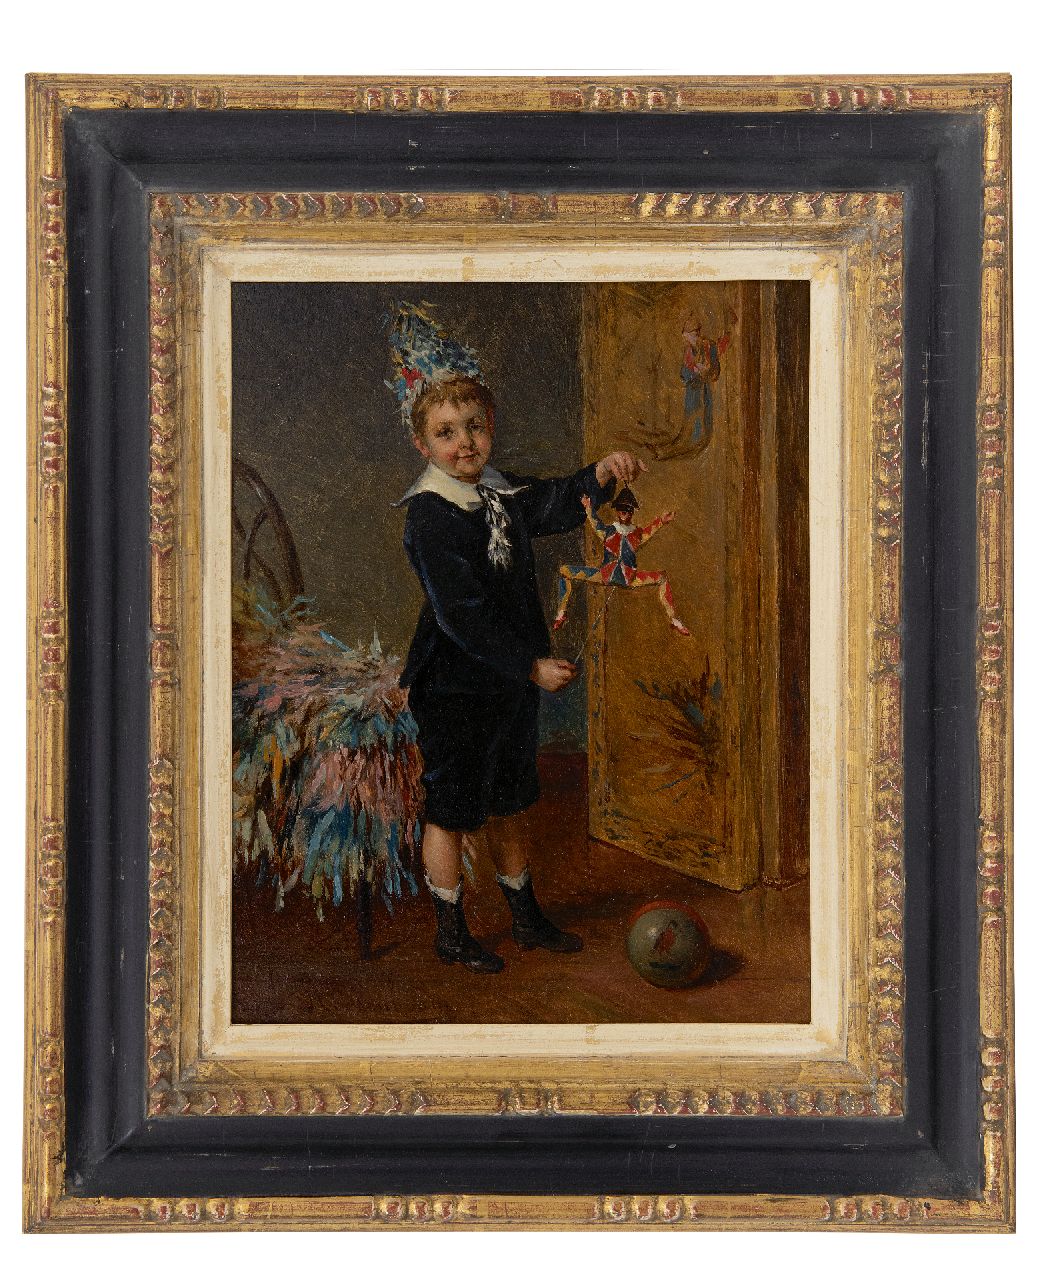 Roosenboom A.  | Albert Roosenboom | Schilderijen te koop aangeboden | De jonge artiest, olieverf op paneel 24,0 x 18,8 cm, gesigneerd linksonder